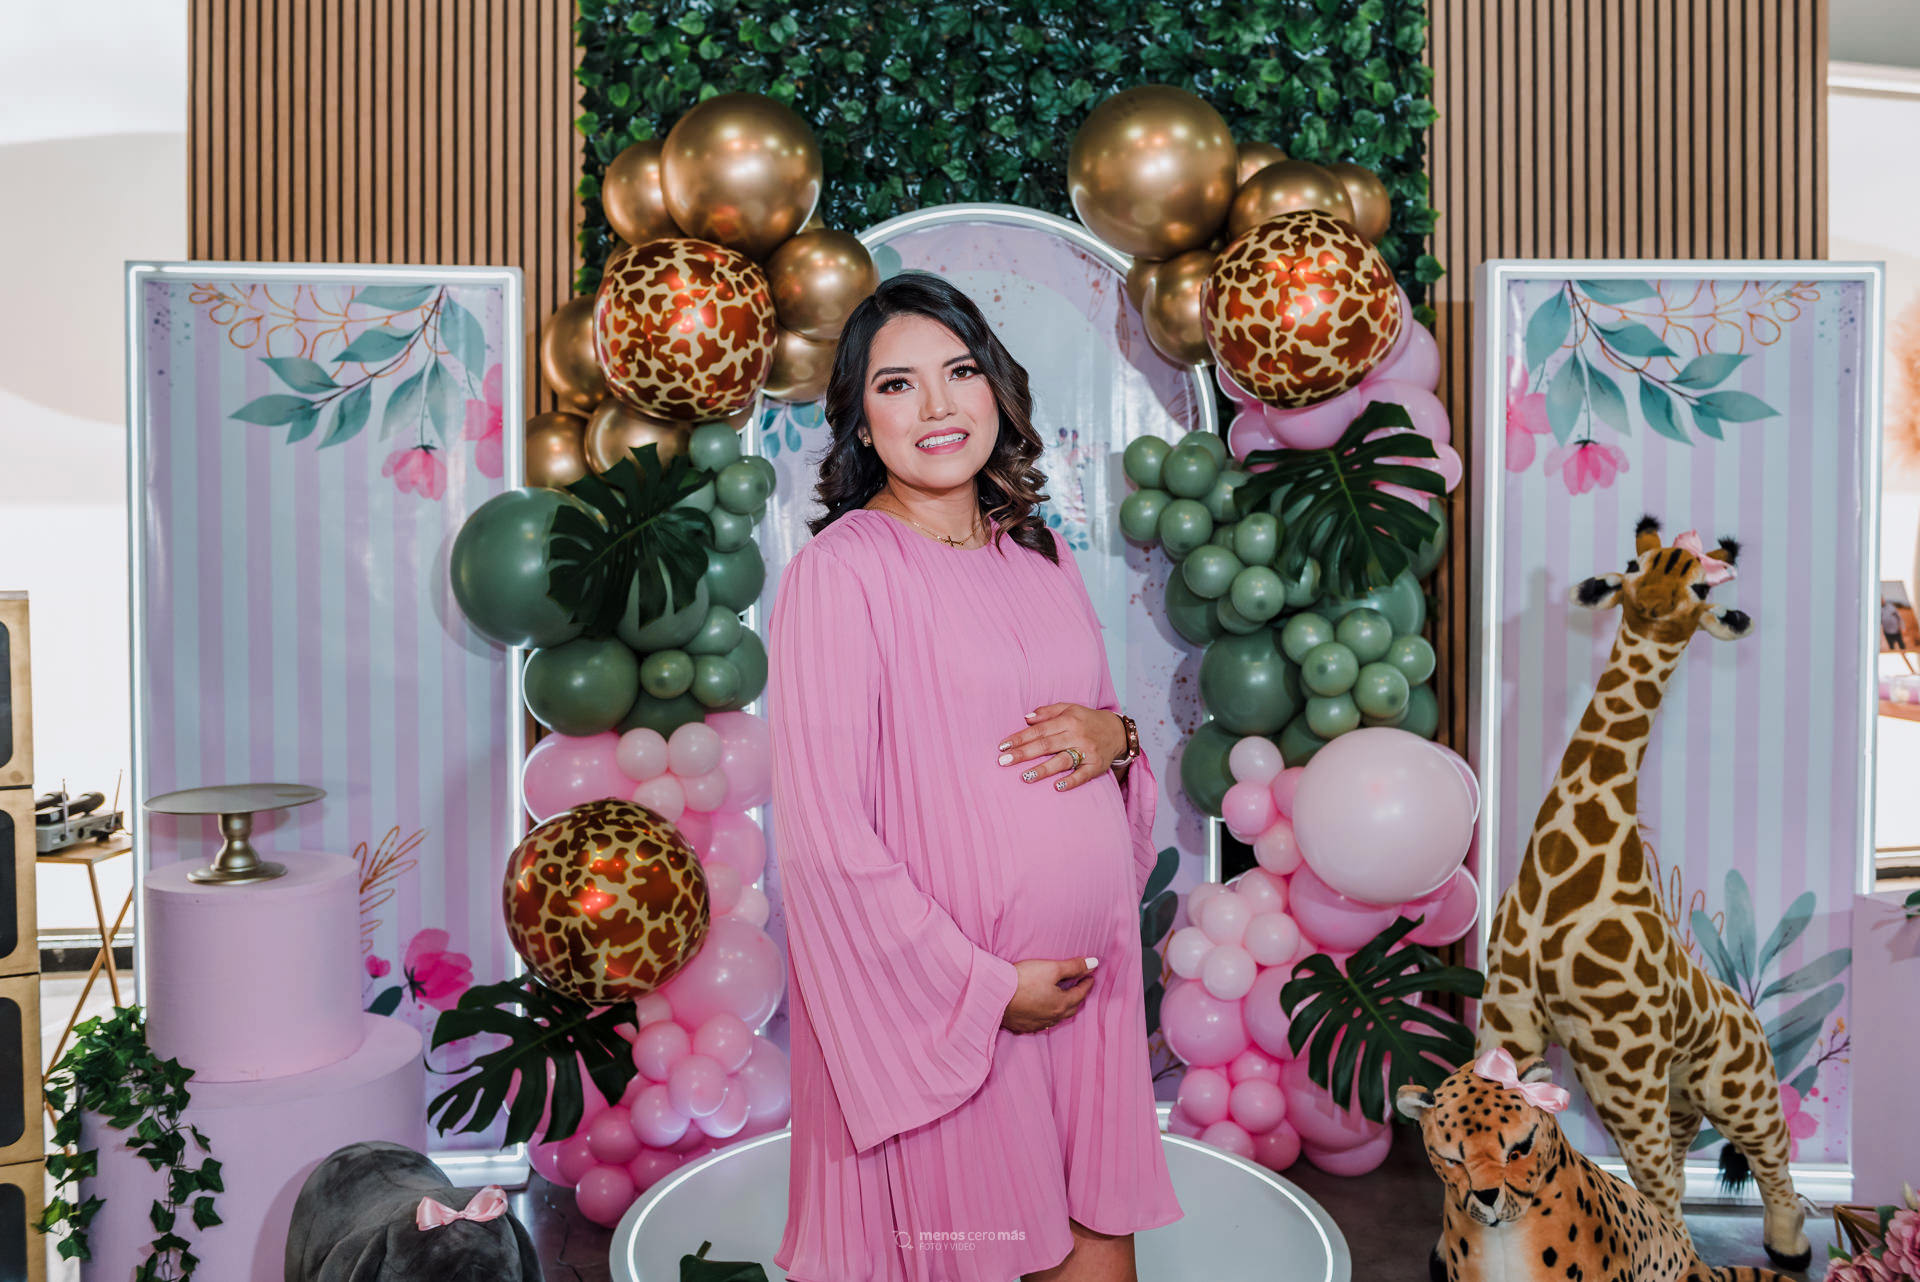 Fotografía de Elisa, radiante y embarazada, sonriendo en su babyshower celebrado en Santa Bárbara Eventos en Escobedo. Rodeada de familiares y amigos, disfruta de la decoración en rosa y con detalles de animales que anuncia la próxima llegada de su bebé.